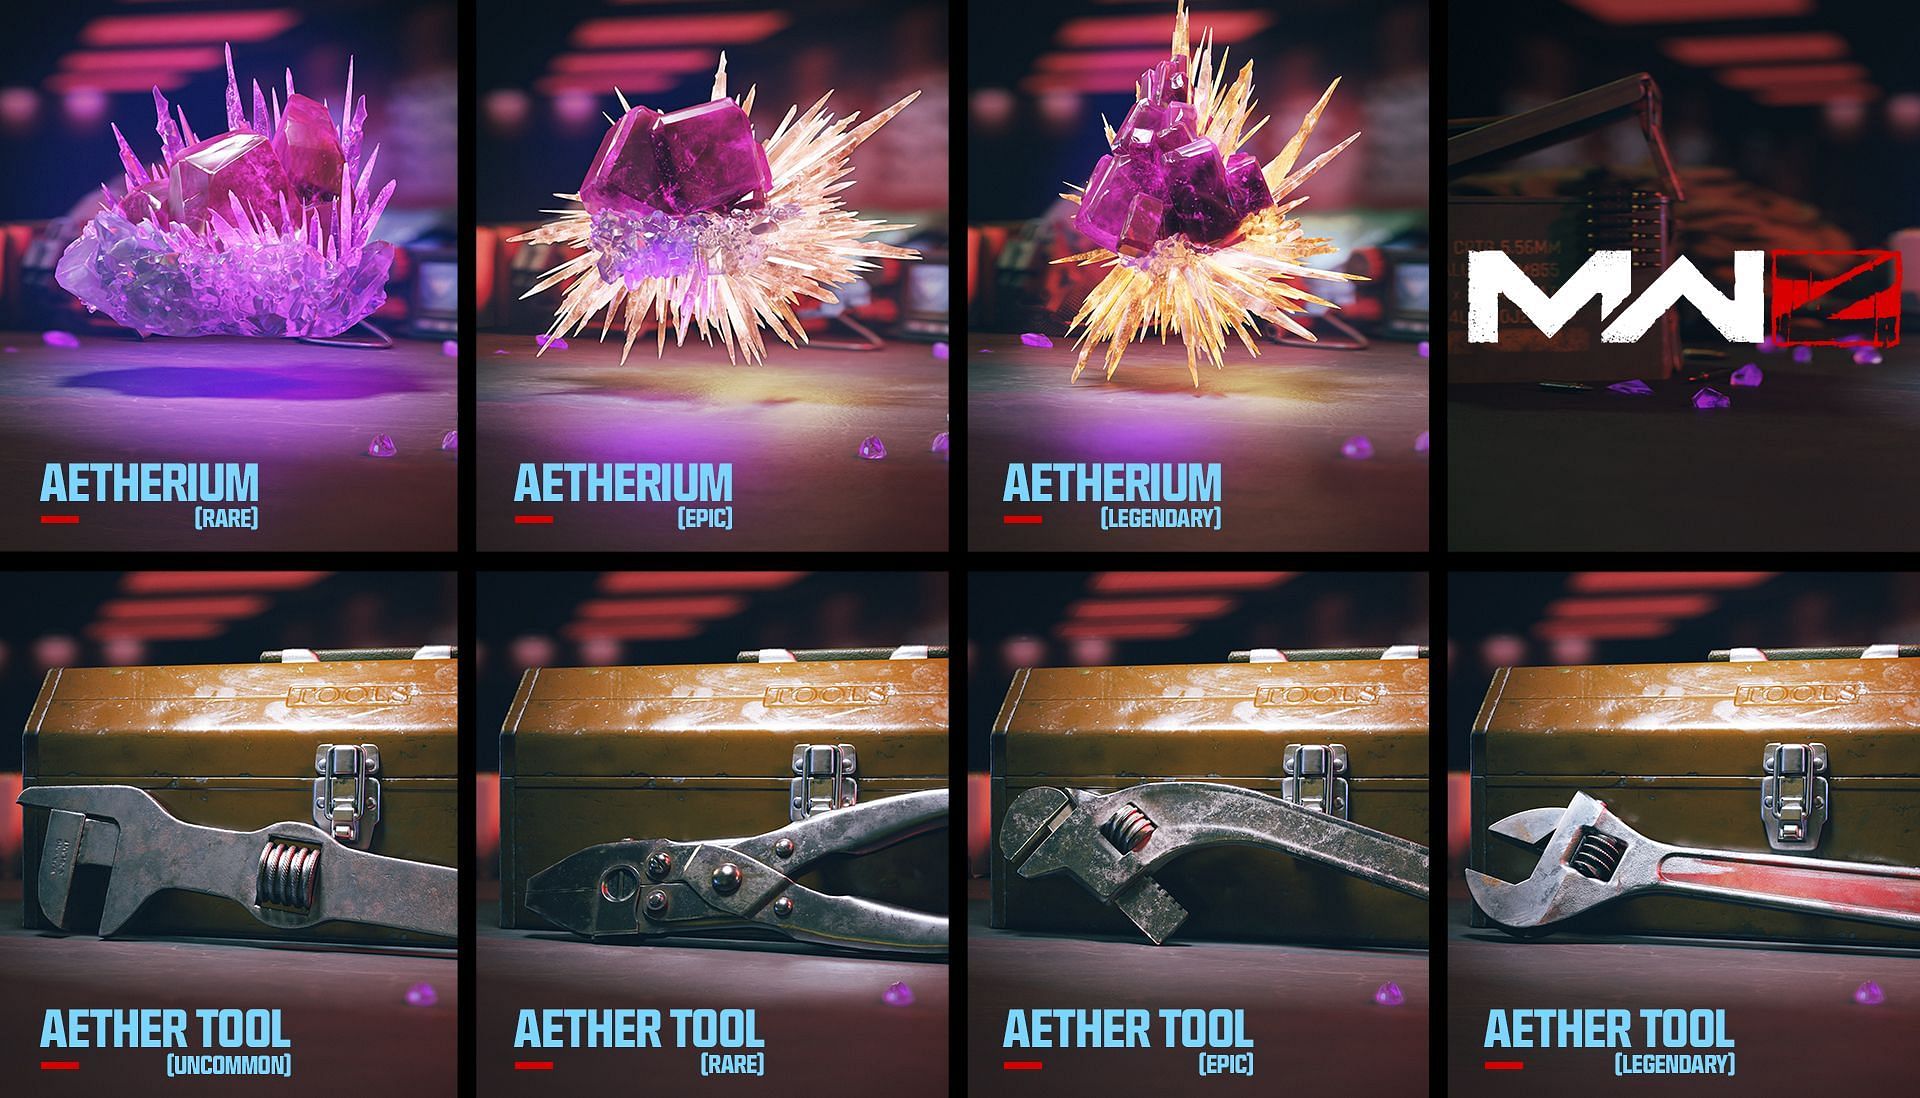 Aetherium (Image via Activision)